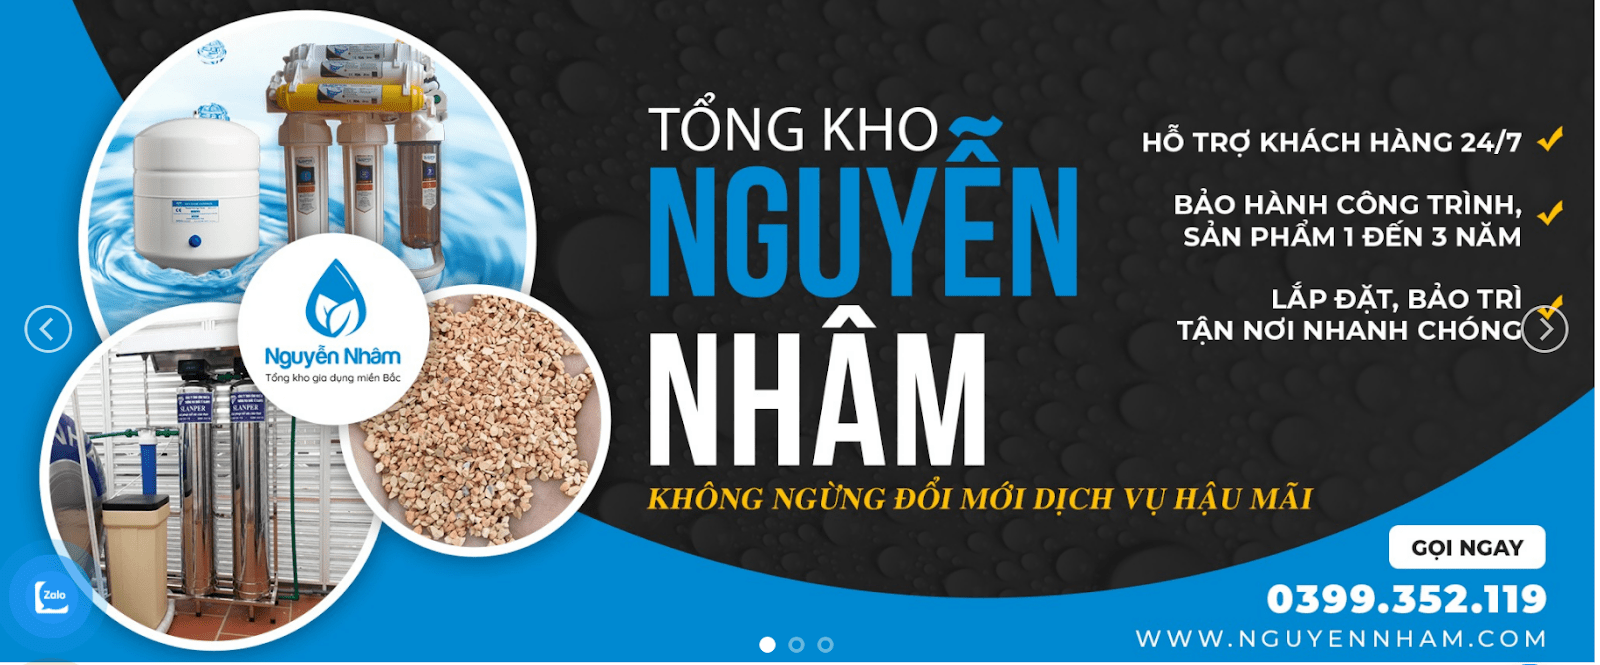 Nguyễn Nhâm - tổng kho gia dụng miền Bắc